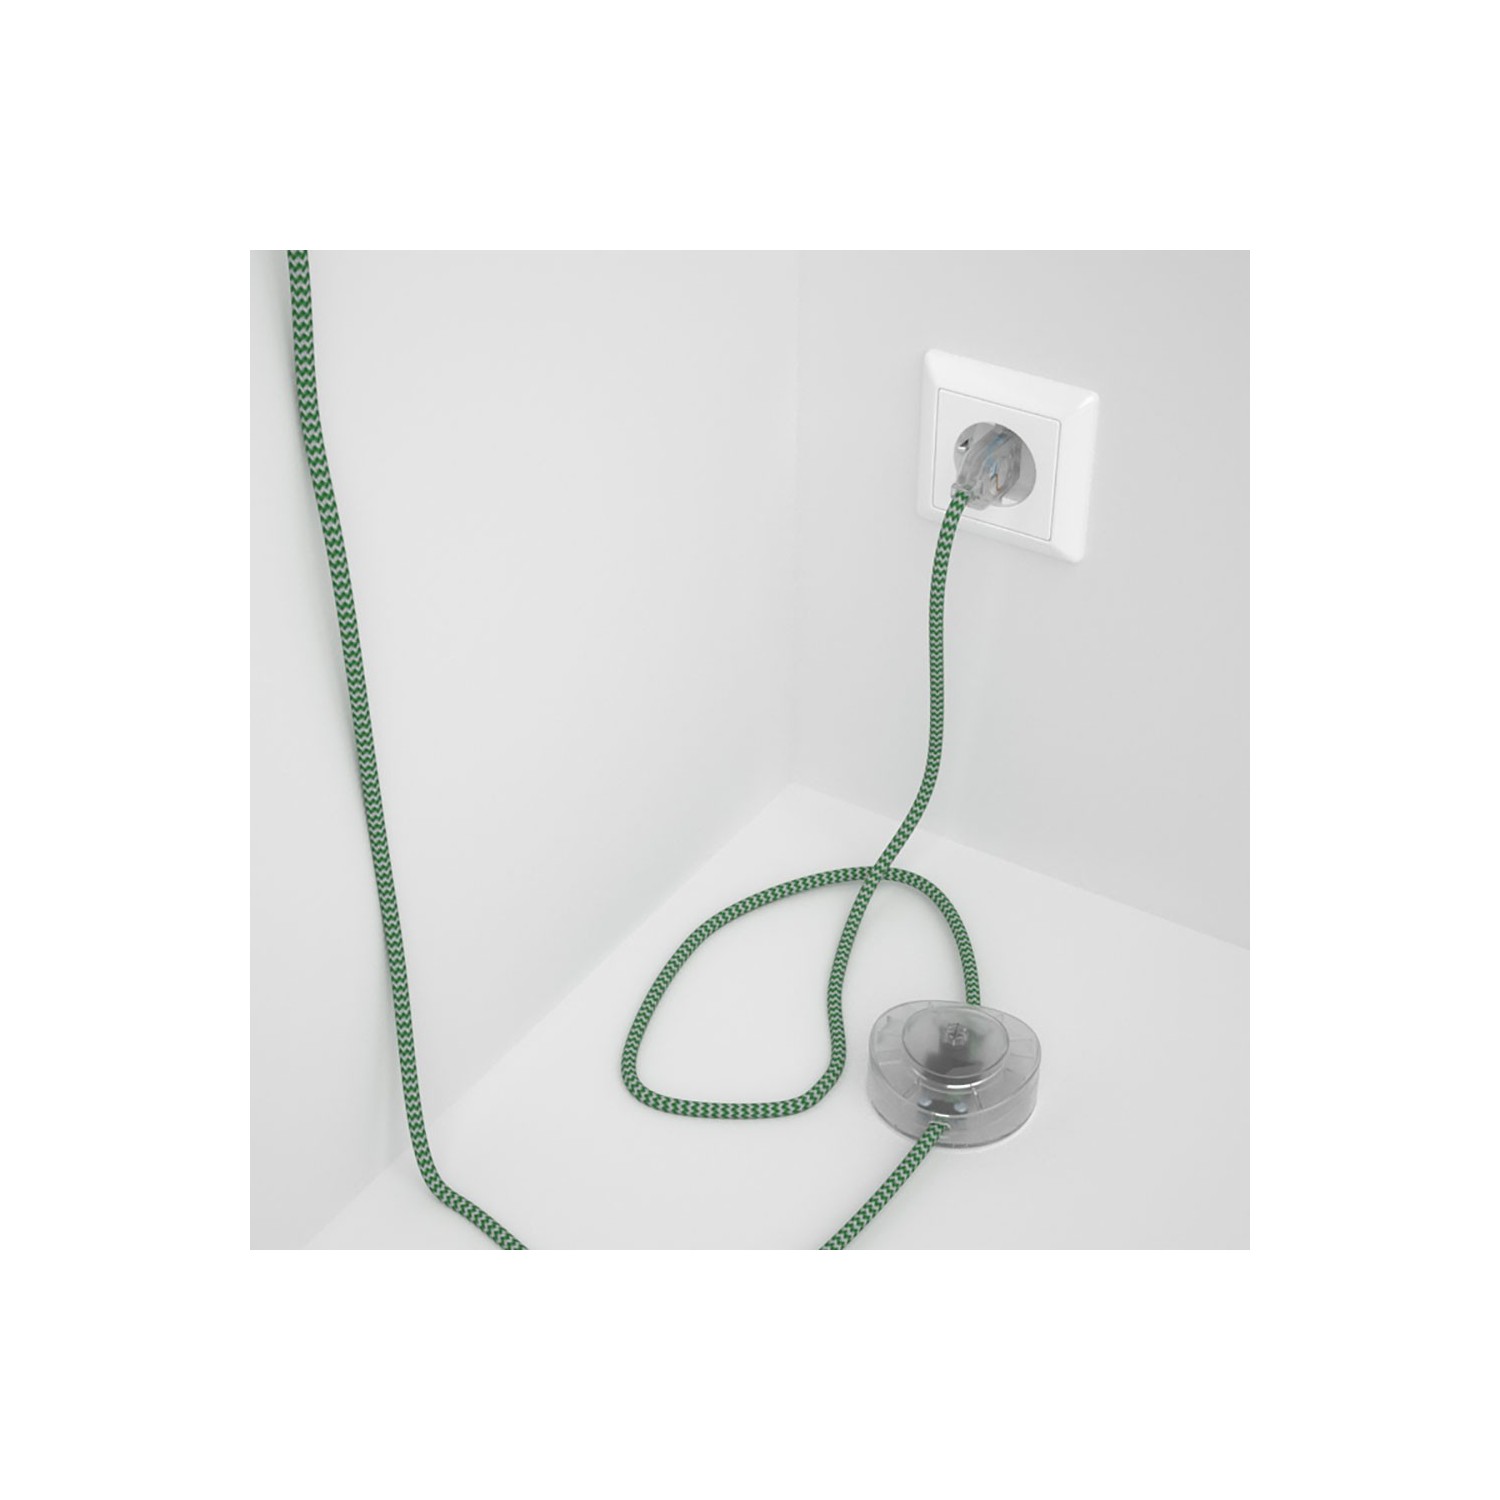 Strijkijzersnoer set RZ06 groen zigzag viscose 3 m. voor staande lamp met stekker en voetschakelaar.